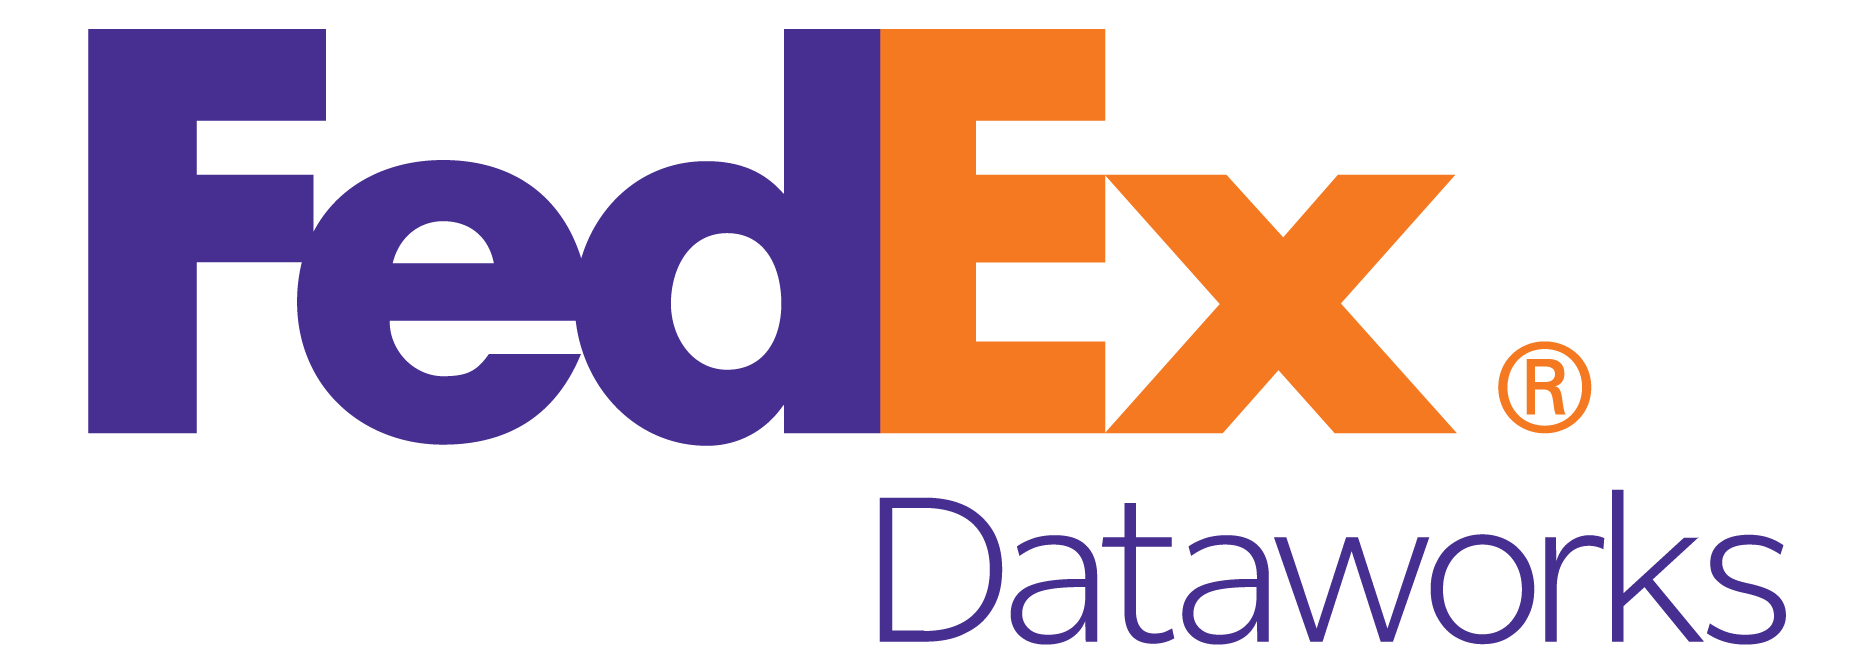 fedex-dataworks